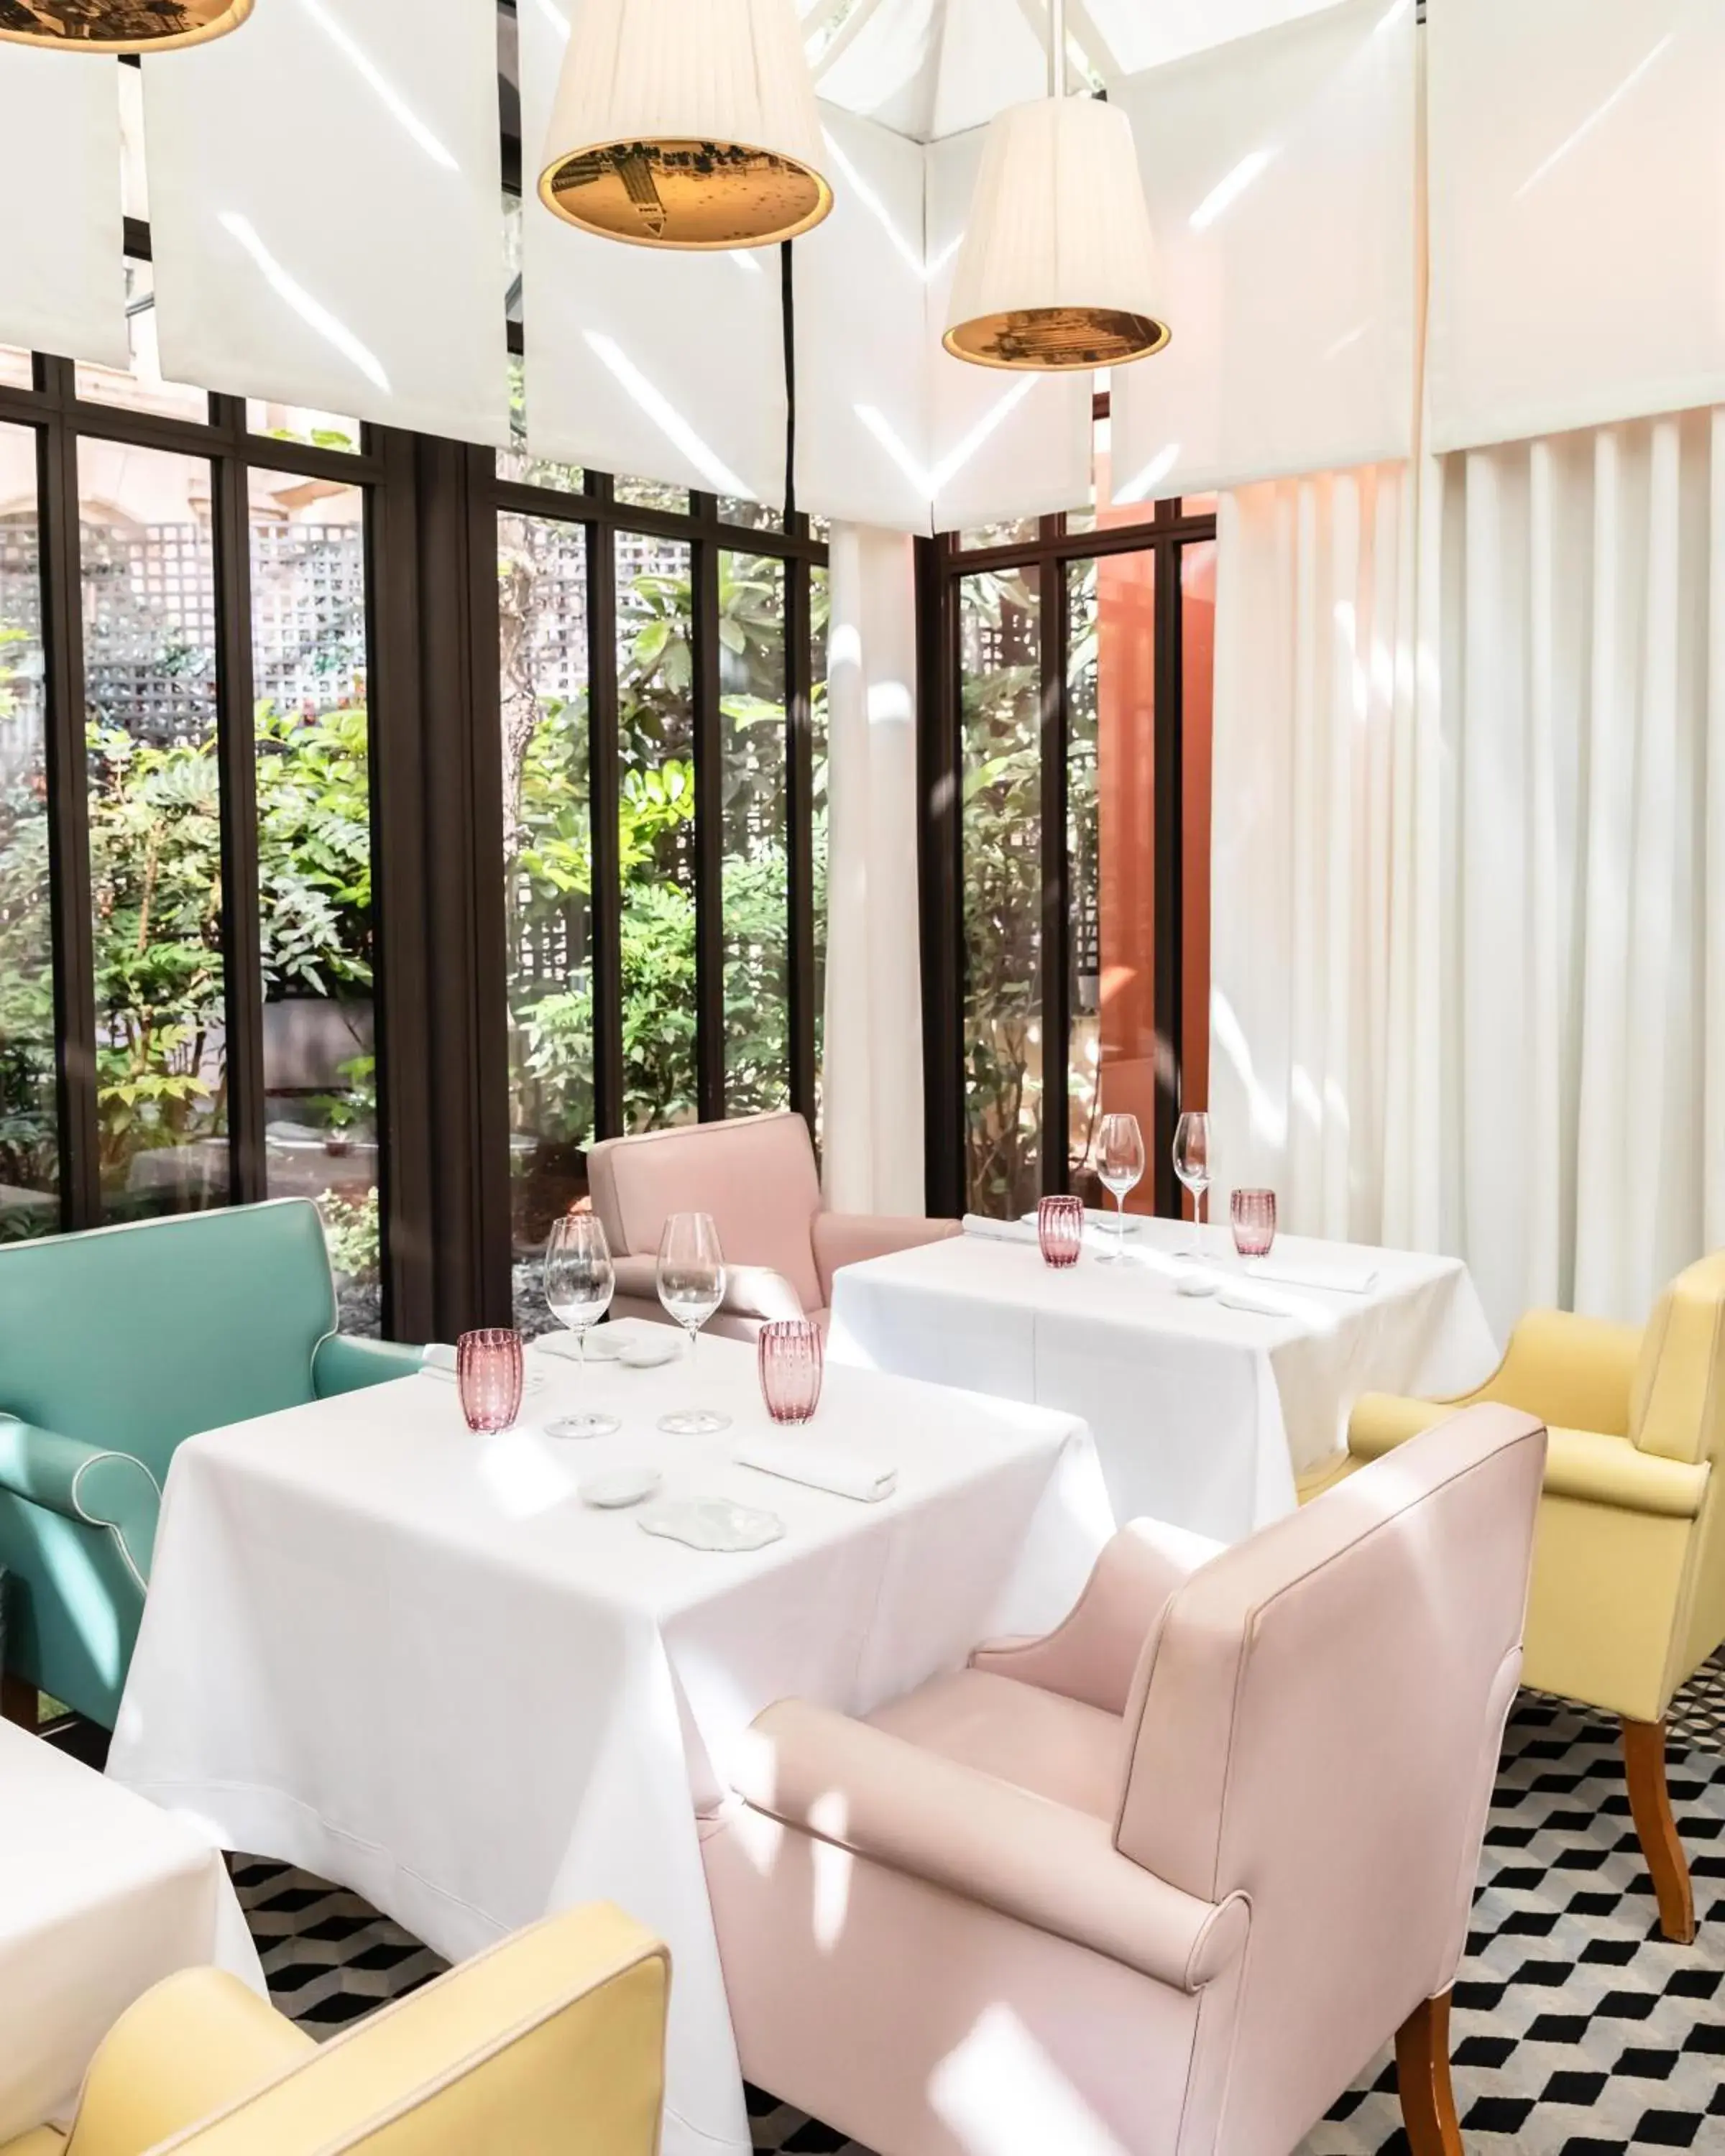 Restaurant/Places to Eat in Le Royal Monceau Hotel Raffles Paris